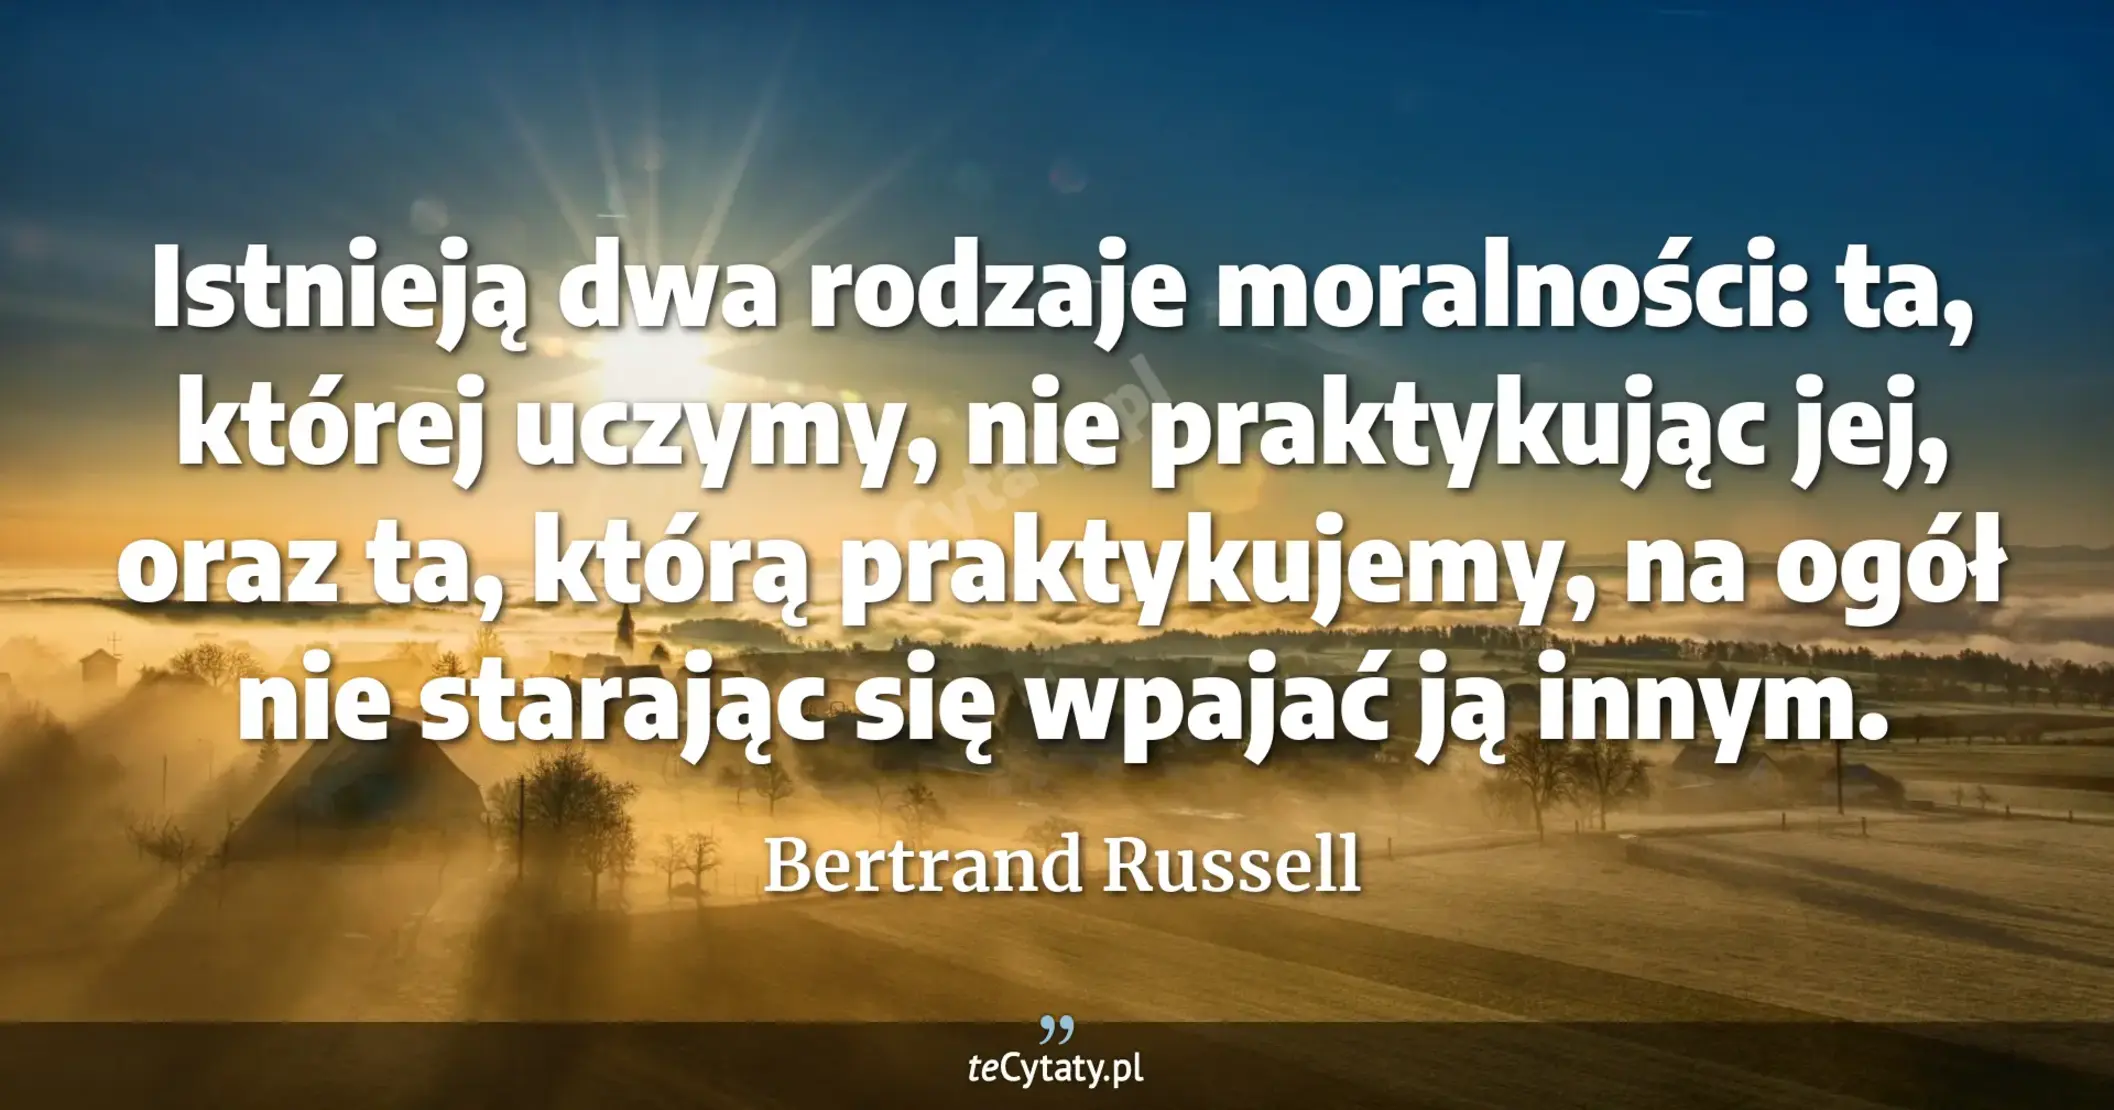 Istnieją dwa rodzaje moralności: ta, której uczymy, nie praktykując jej, oraz ta, którą praktykujemy, na ogół nie starając się wpajać ją innym. - Bertrand Russell